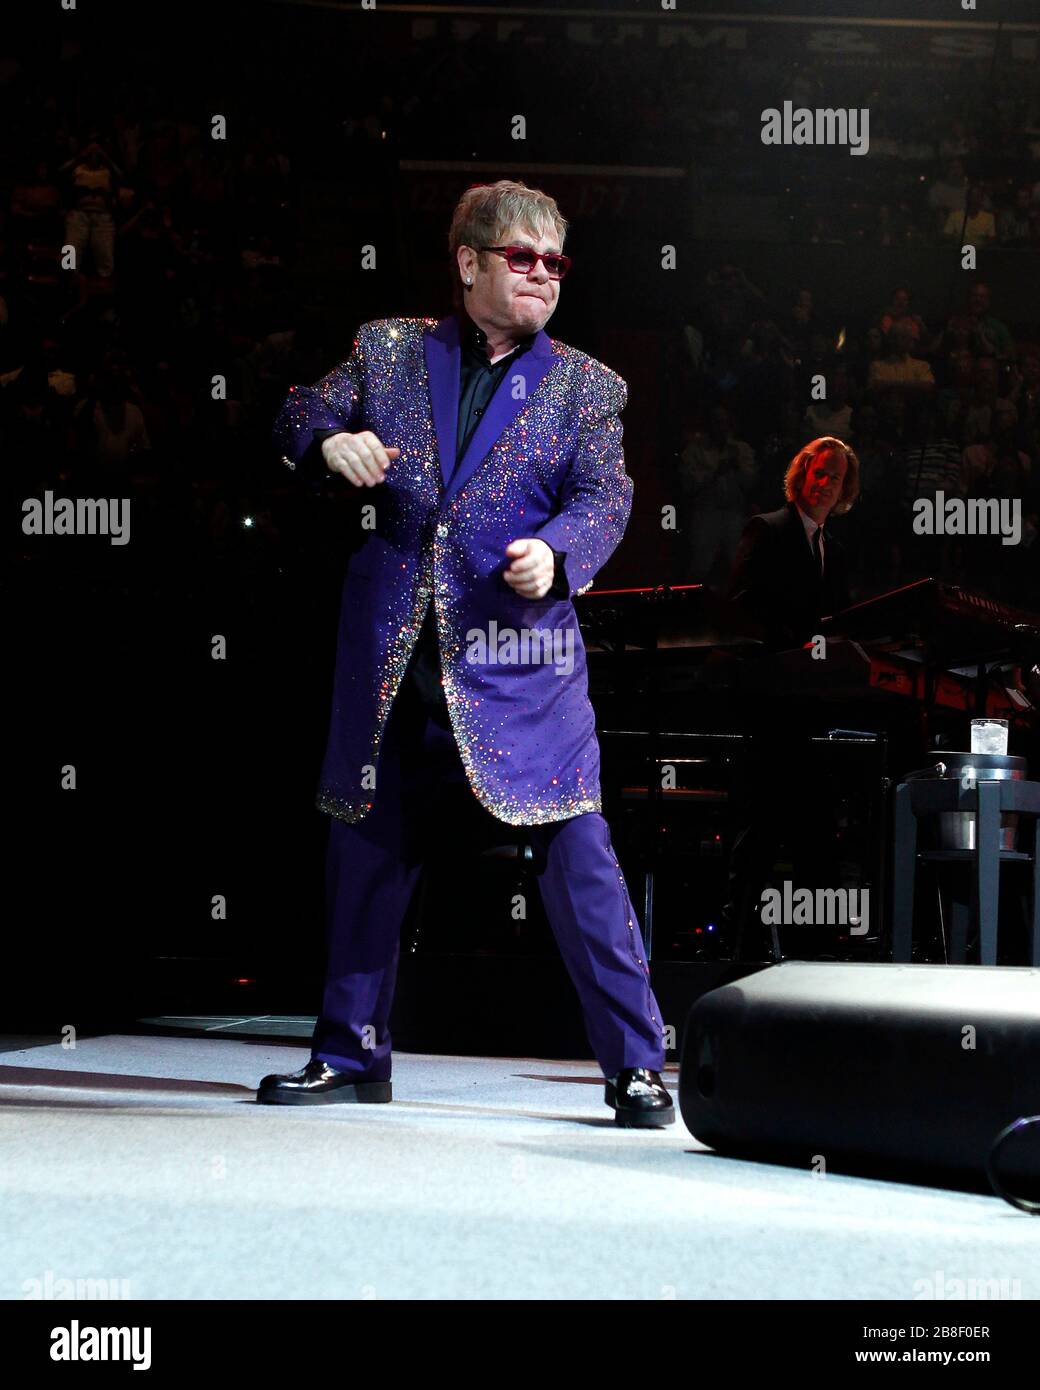 Il cantante Elton John esegue il batterista Nigel Olsson e il resto della band a Sunrise, Florida. Foto Stock